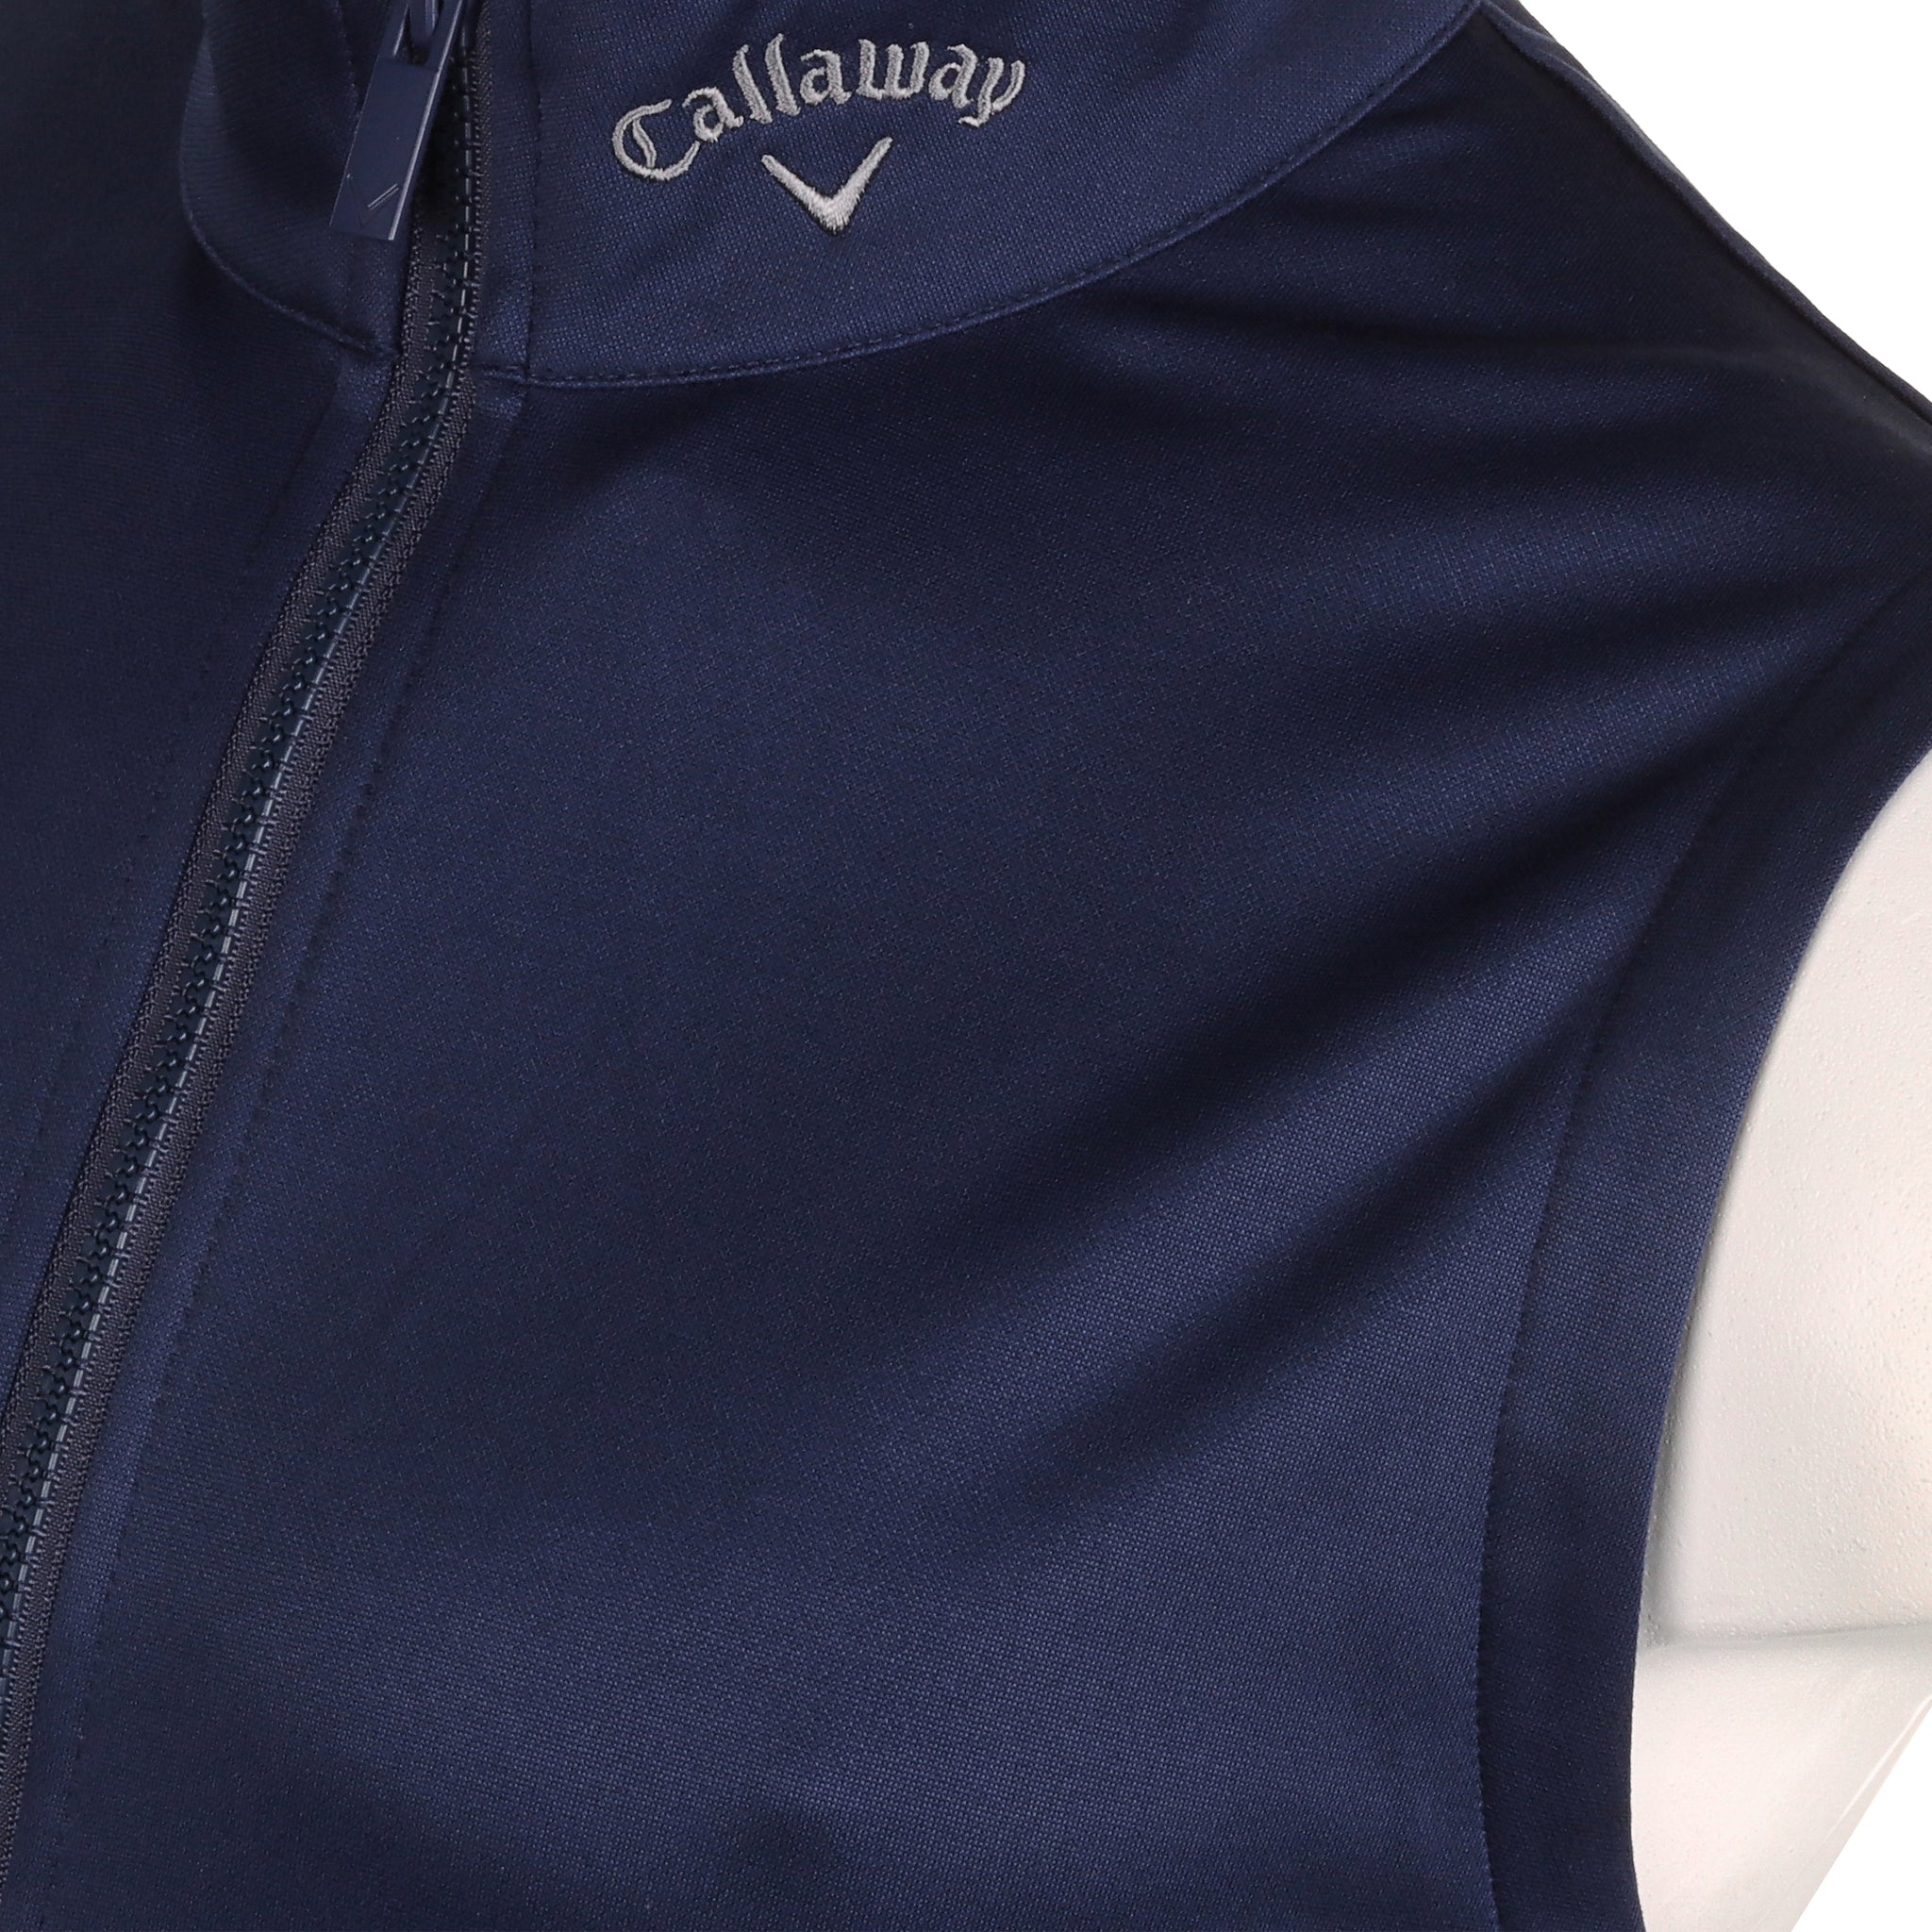 Callaway Golf 3 Chev Full Zip Vest